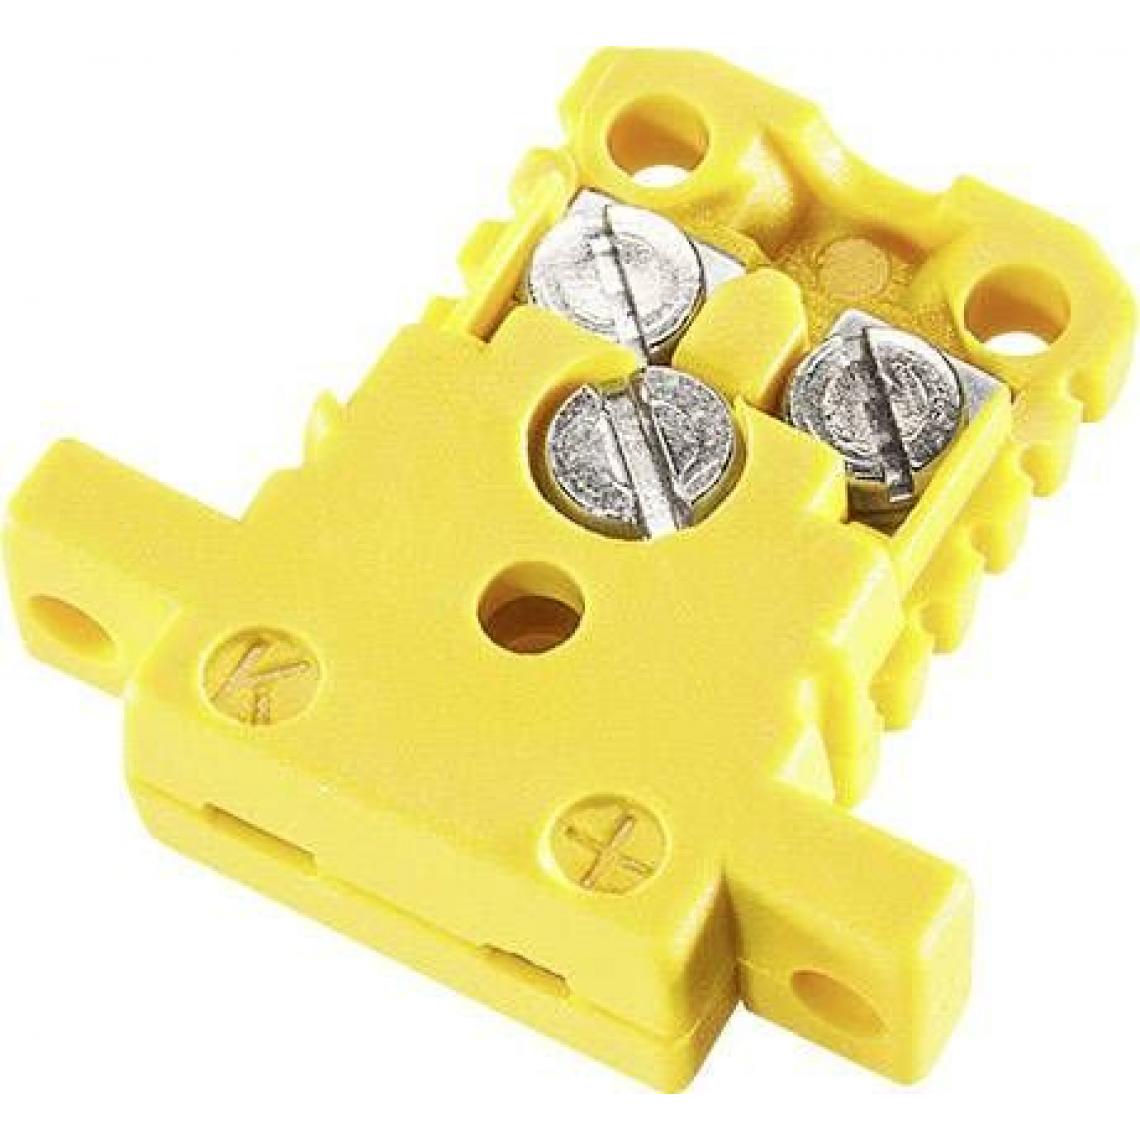 Inconnu - Prise miniature de couplage type K jaune NiCrNi - Interrupteurs et prises étanches